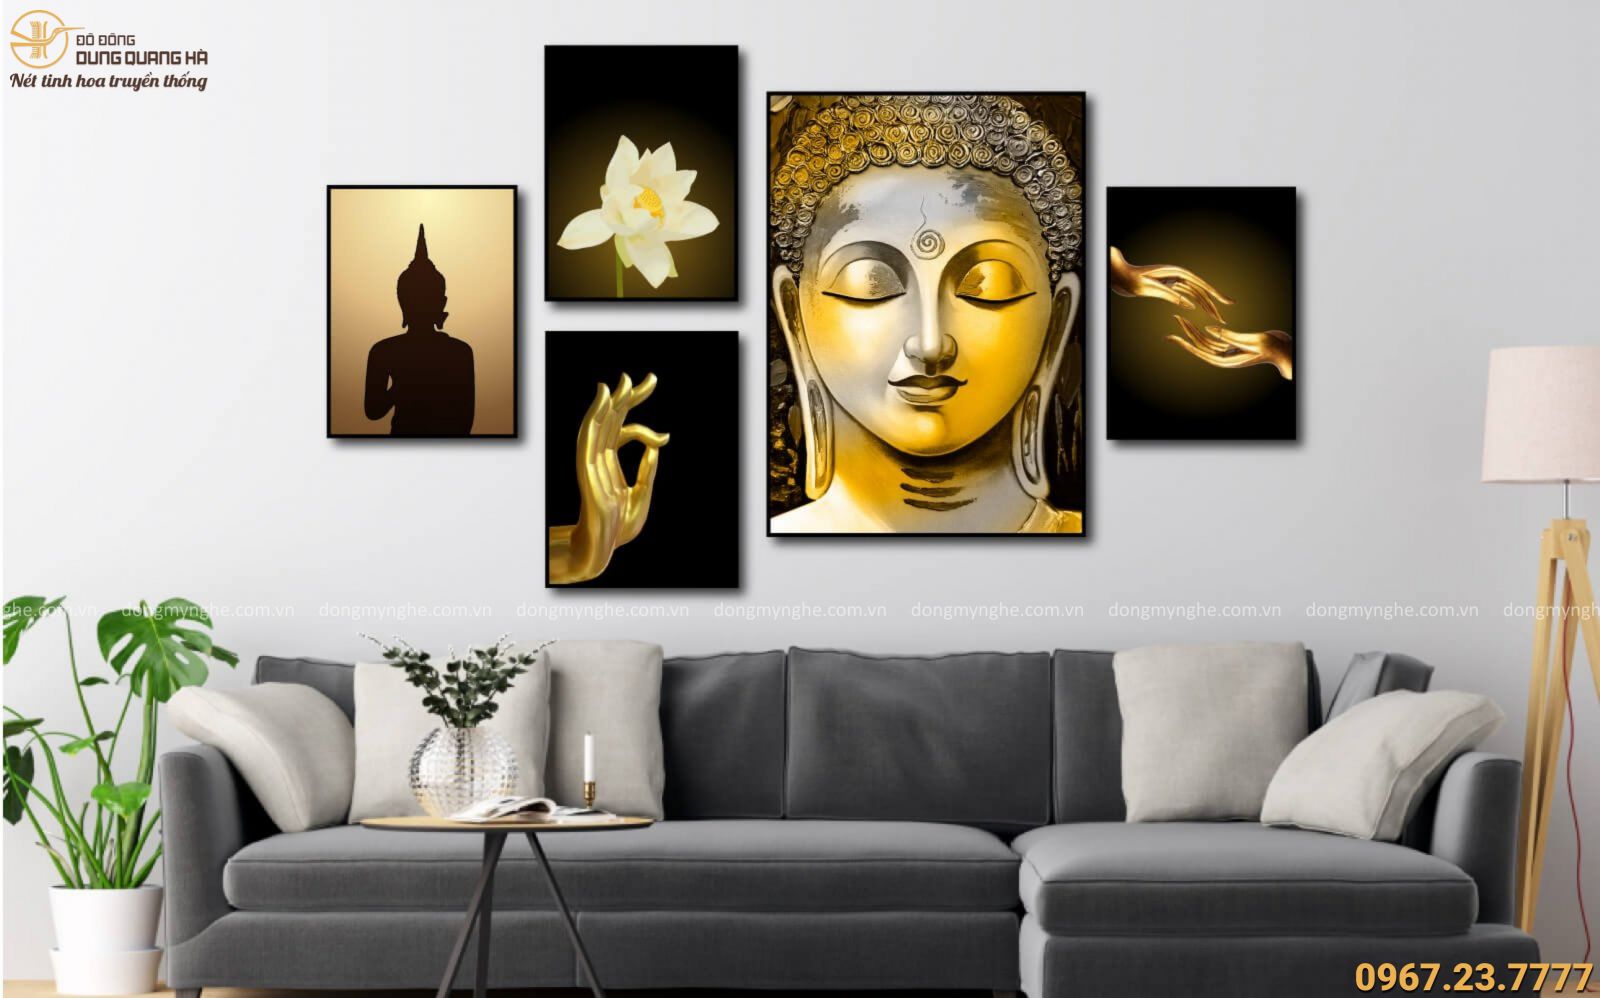 Treo tranh ảnh Phật trong phòng khách theo phong thủy không chỉ tạo được sự thanh lọc cho không gian sống chỉ riêng mình bạn mà còn mang lại vô số điều tốt đẹp cho cả gia đình. Hãy tìm hiểu ngay những điều quý giá về phong thủy cho căn nhà của bạn bằng hình ảnh đẹp mắt này.